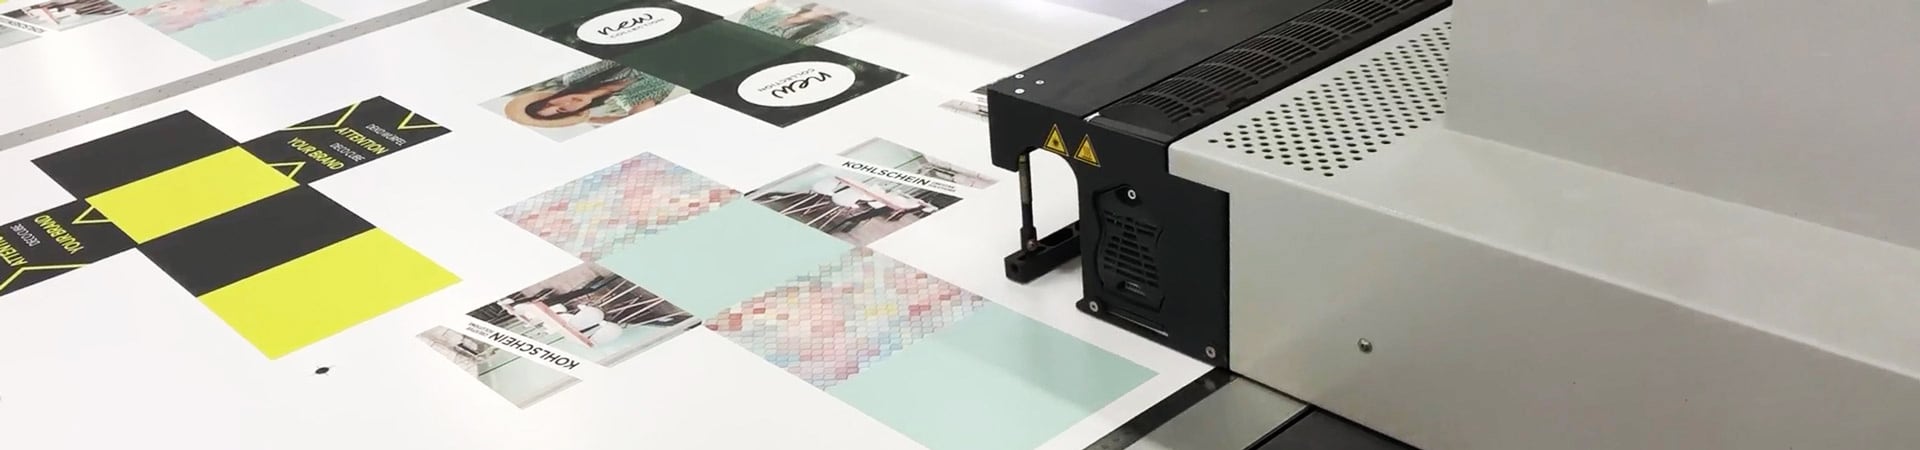 Digital printing inspiration header